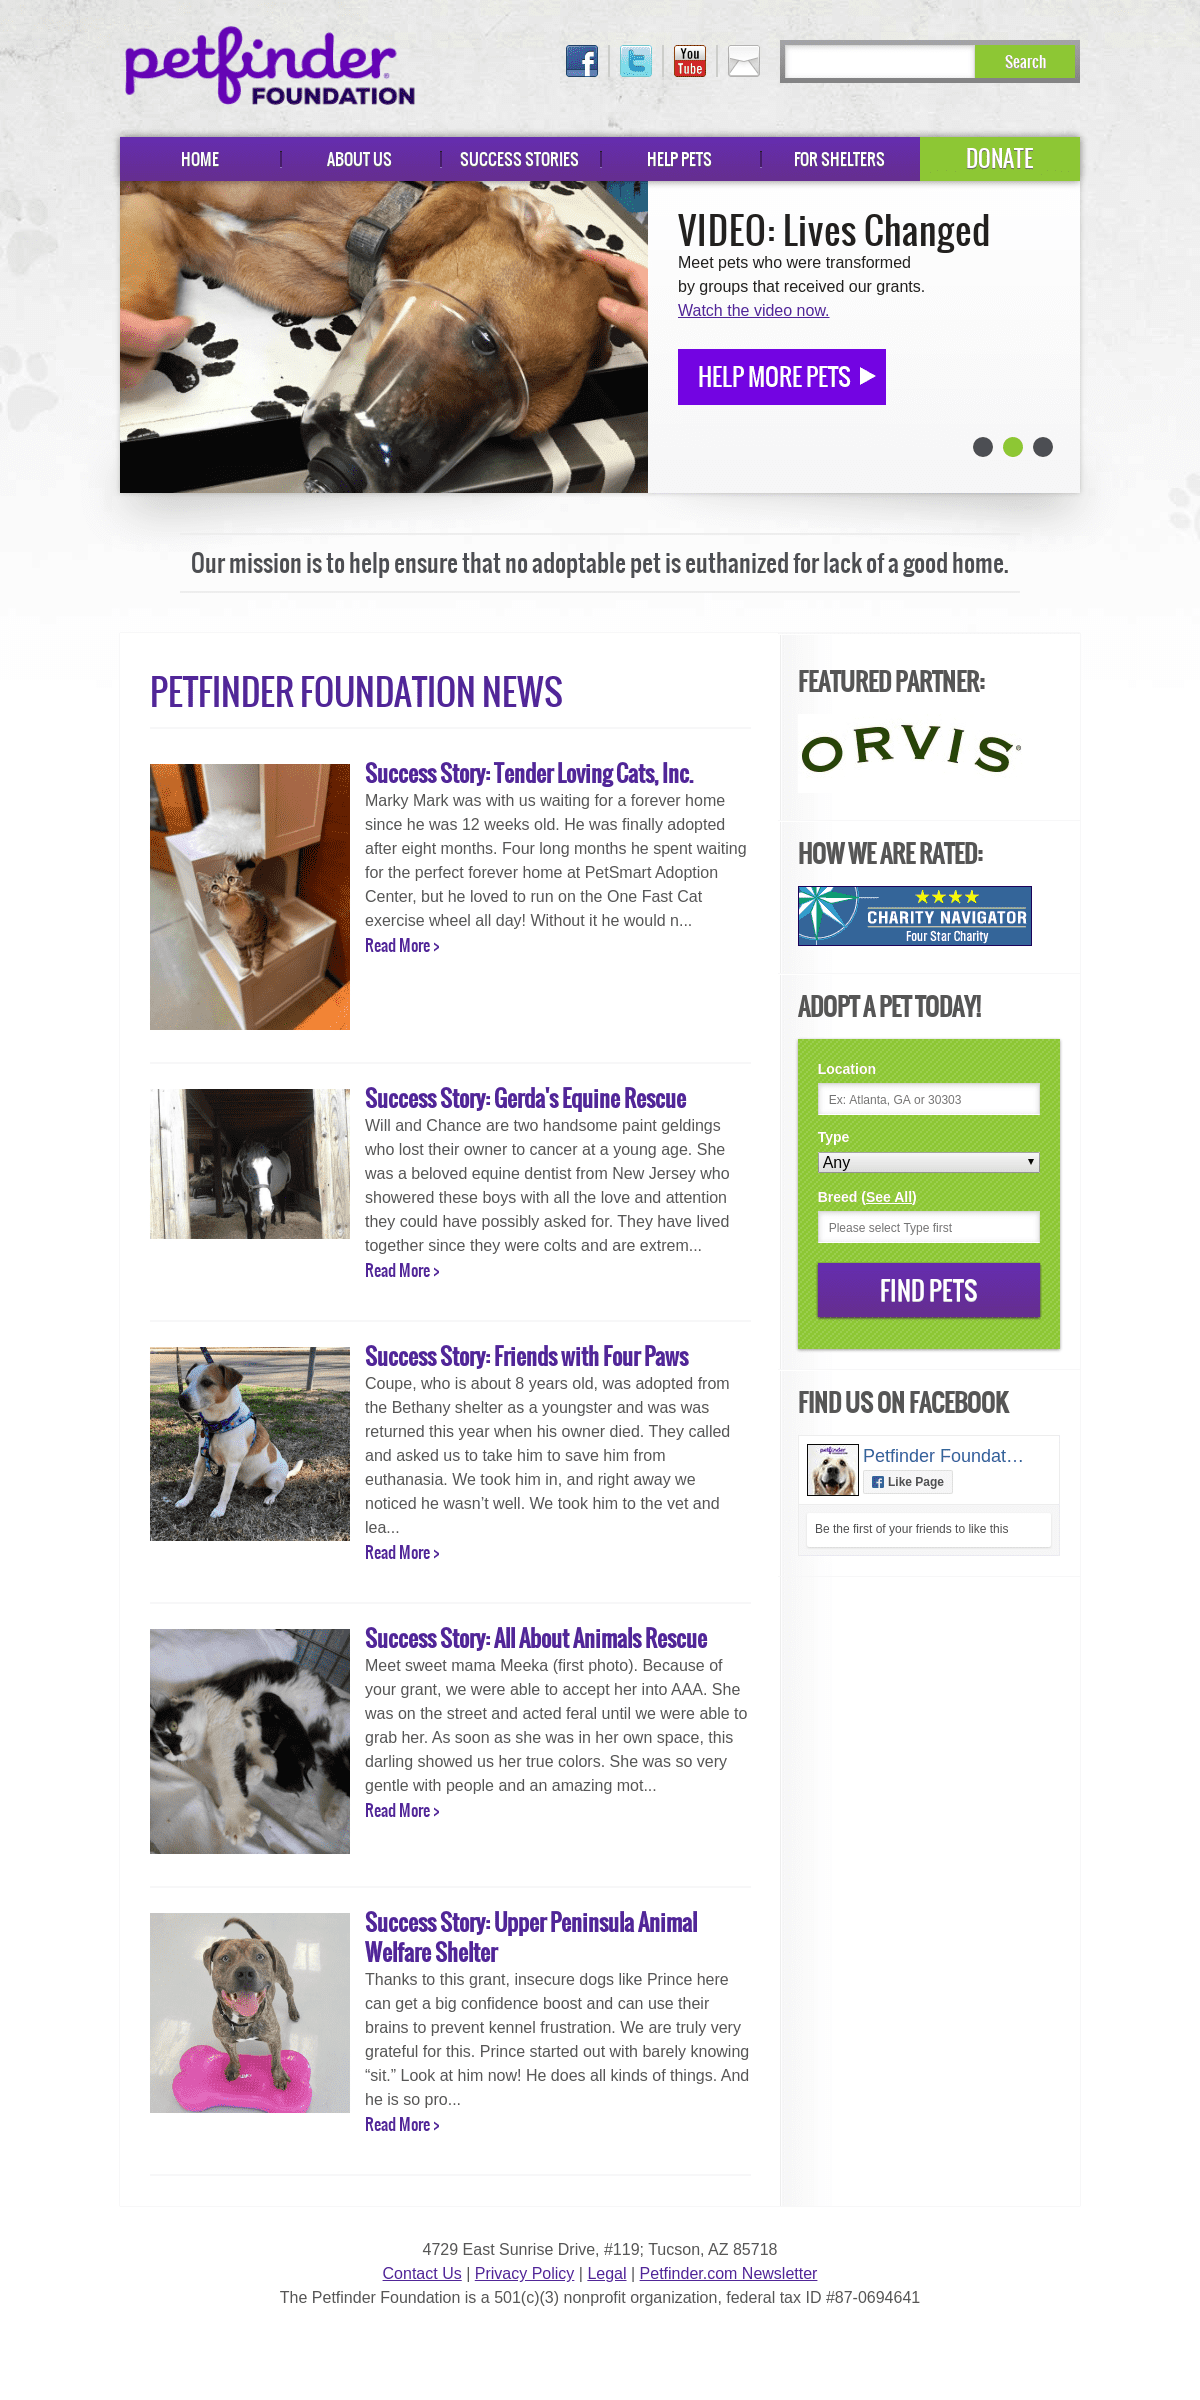 A complete backup of petfinderfoundation.com